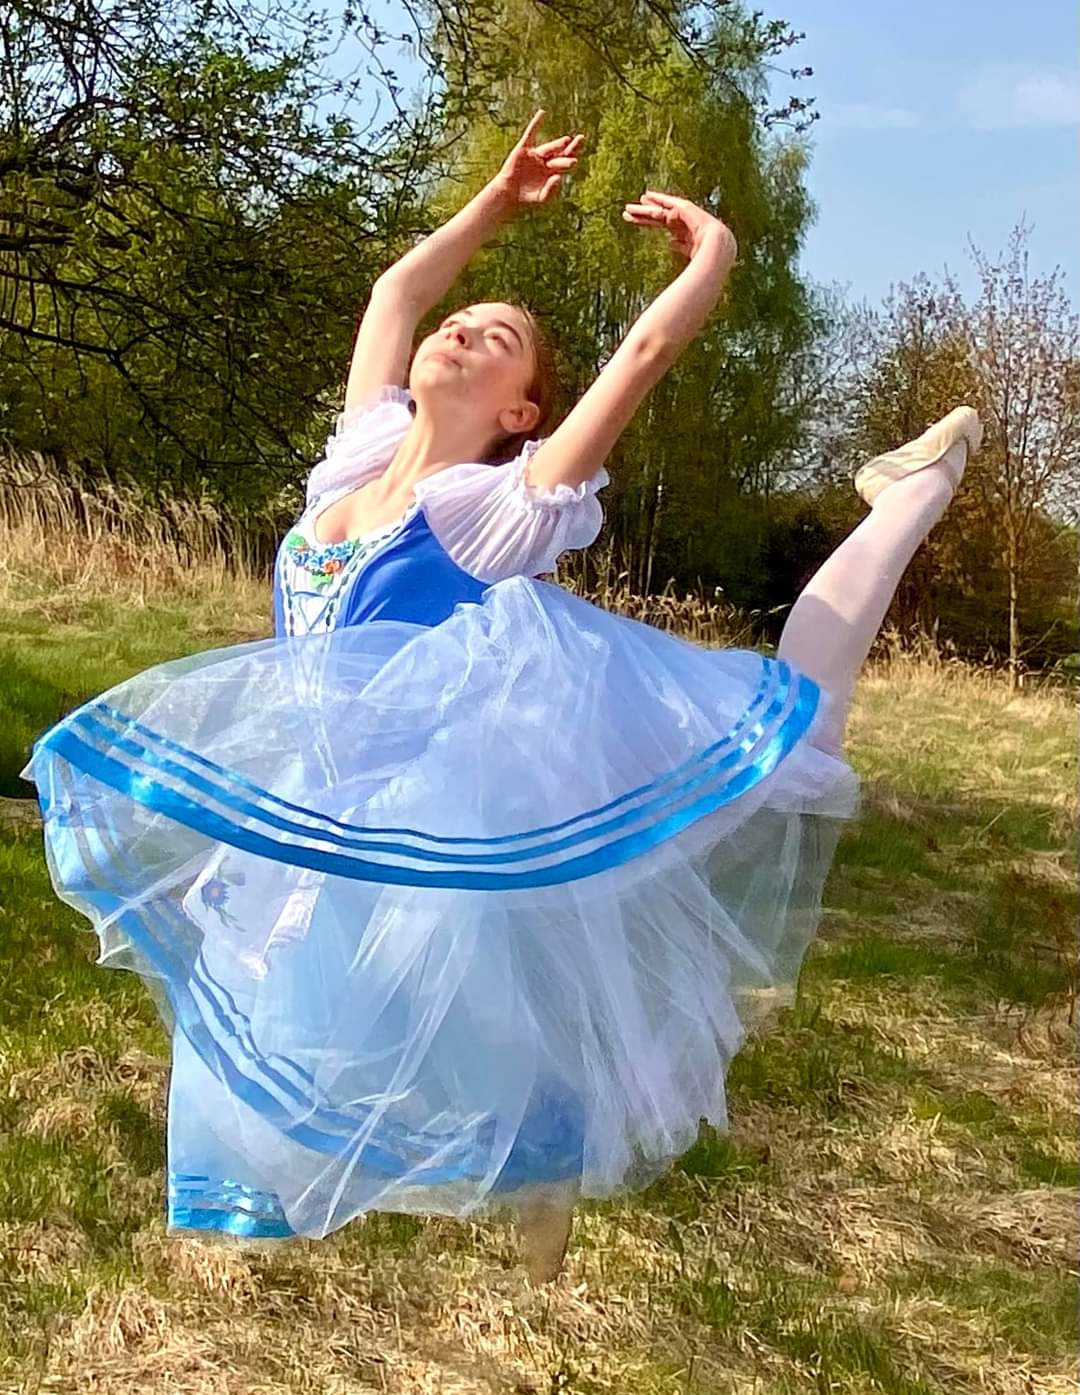 tutu szycie paczka baletowa romantyczna stroje baletowe Giselle ballet costumes romantic custom